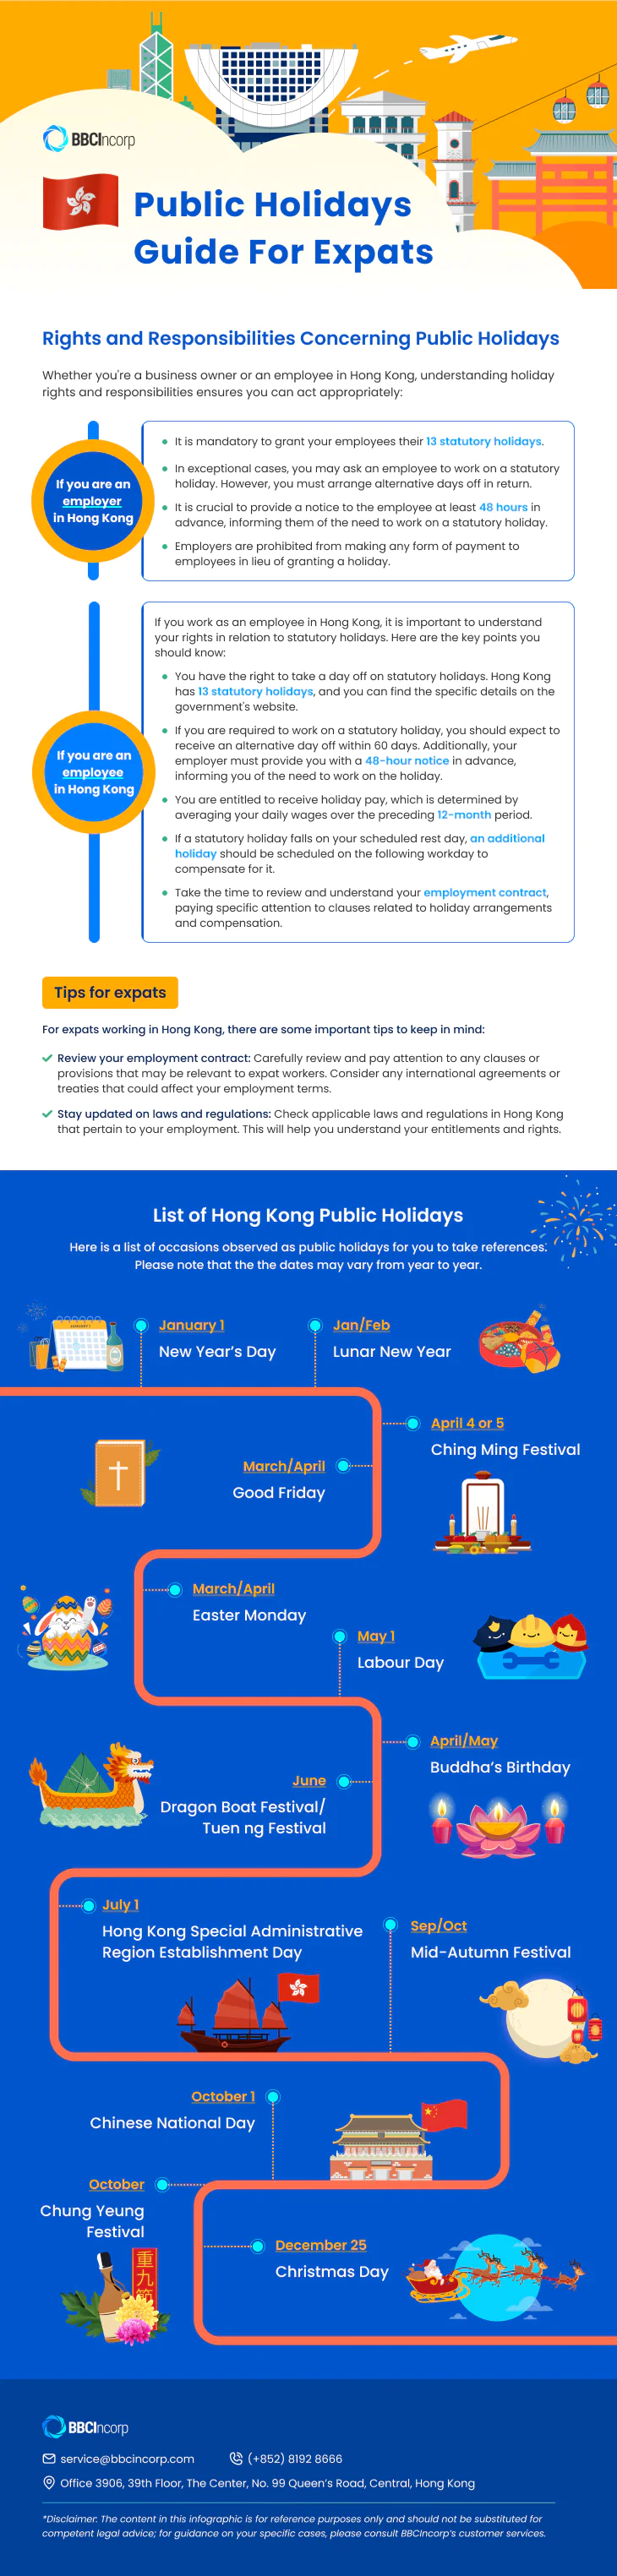 Hong Kong Public Holidays